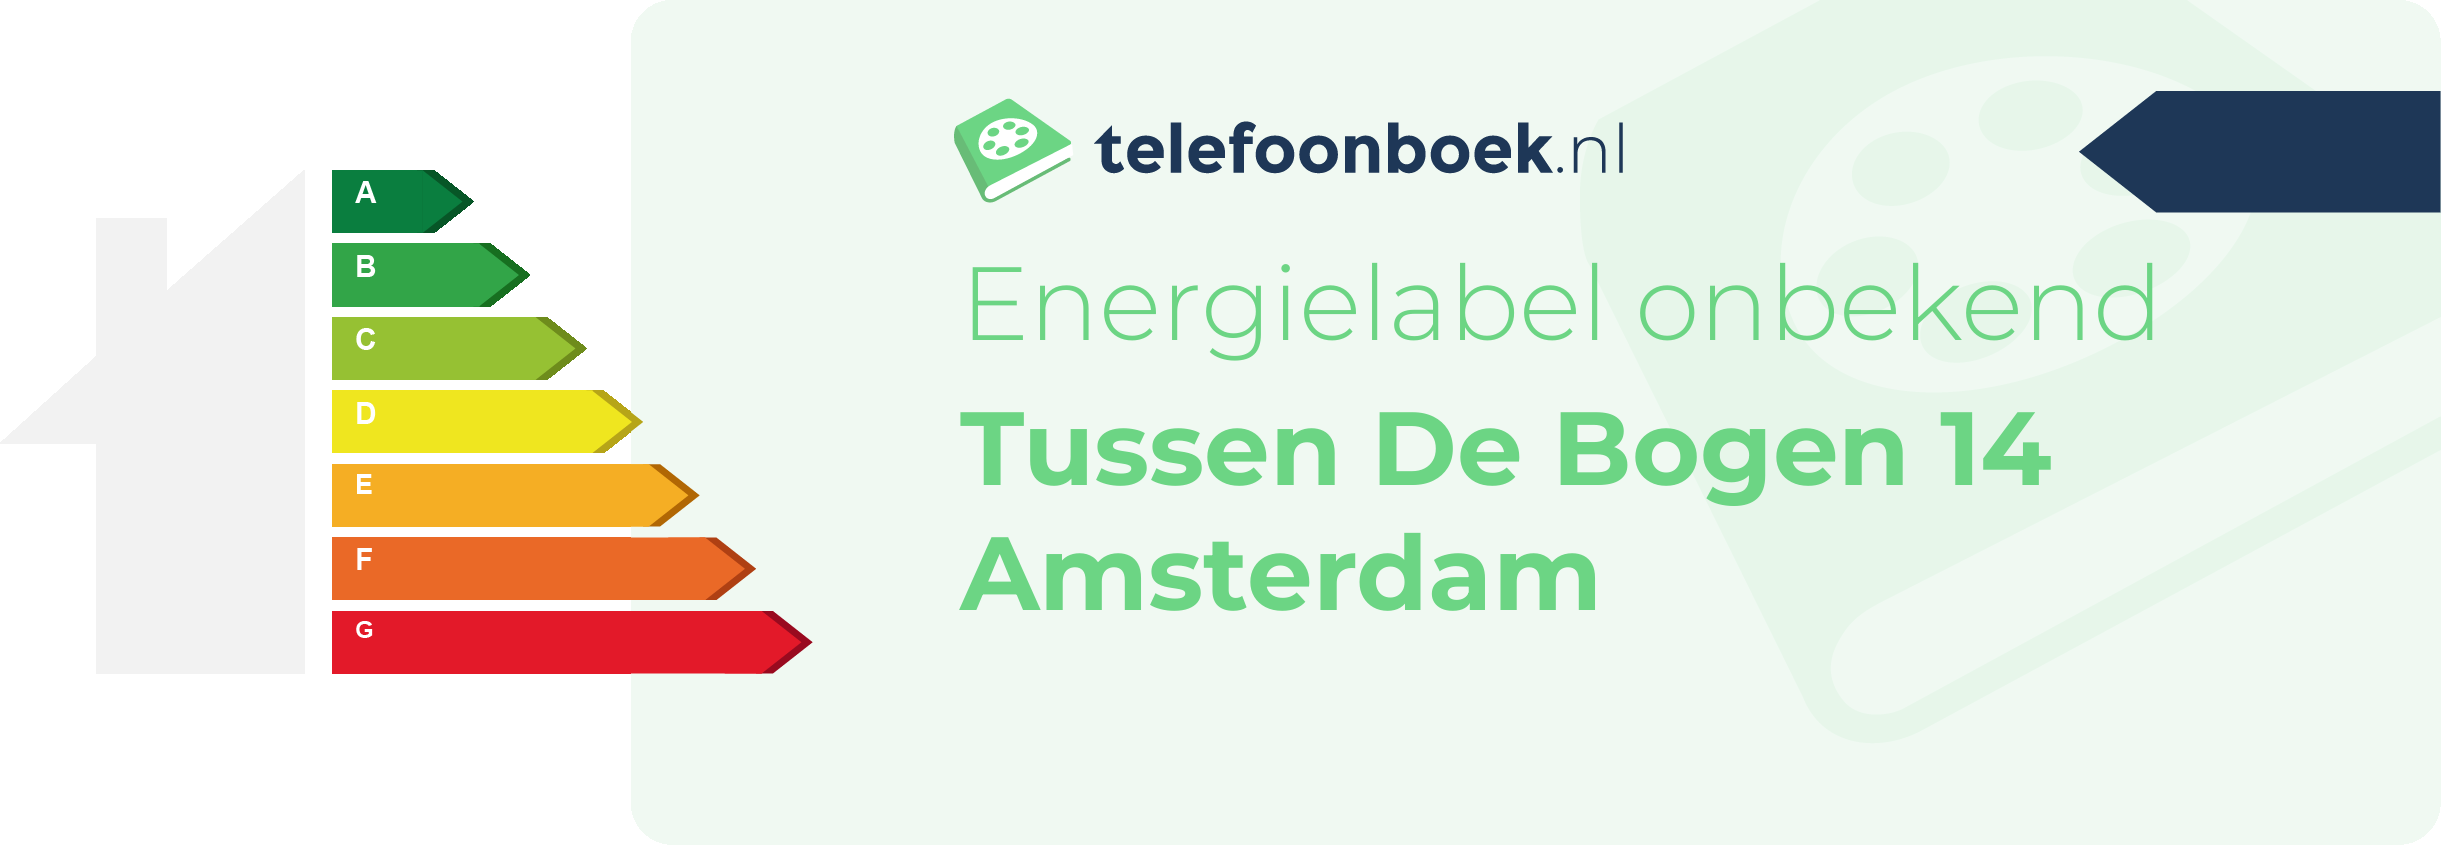 Energielabel Tussen De Bogen 14 Amsterdam